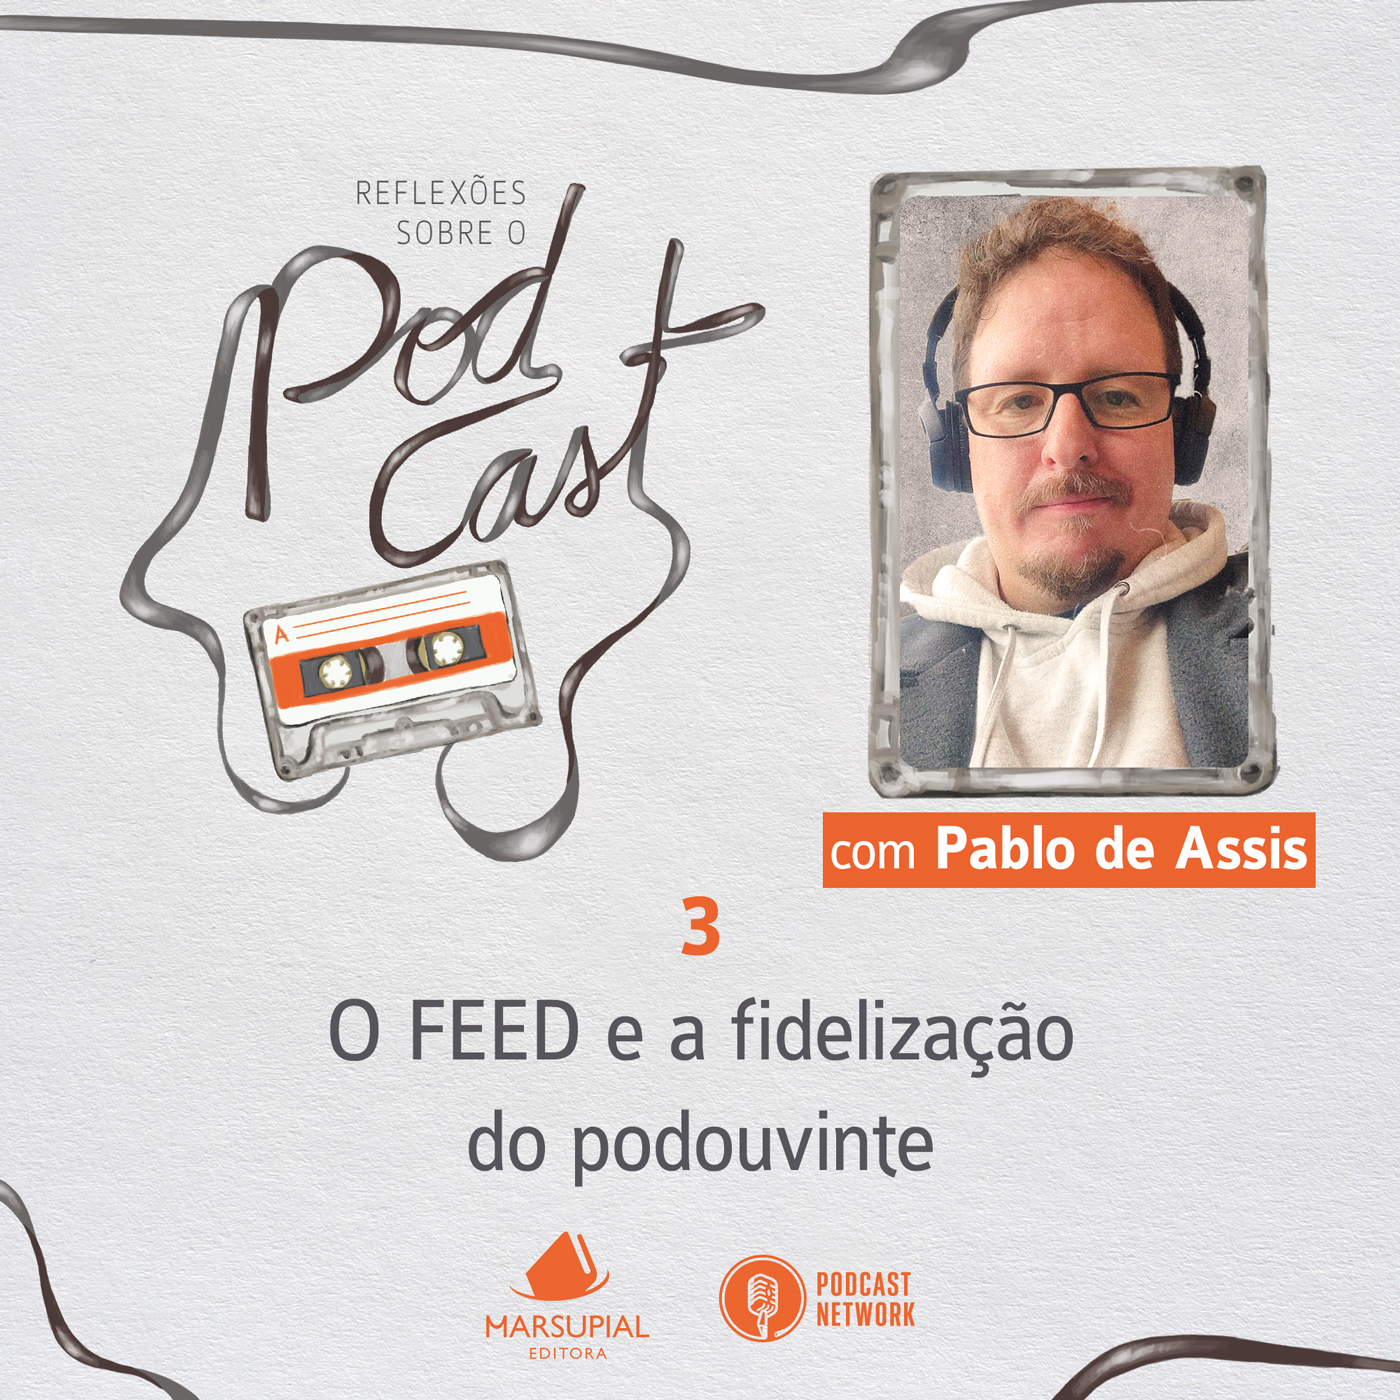 Reflexões sobre o Podcast - 03 - O FEED e a fidelização do podouvinte, por Pablo de Assis